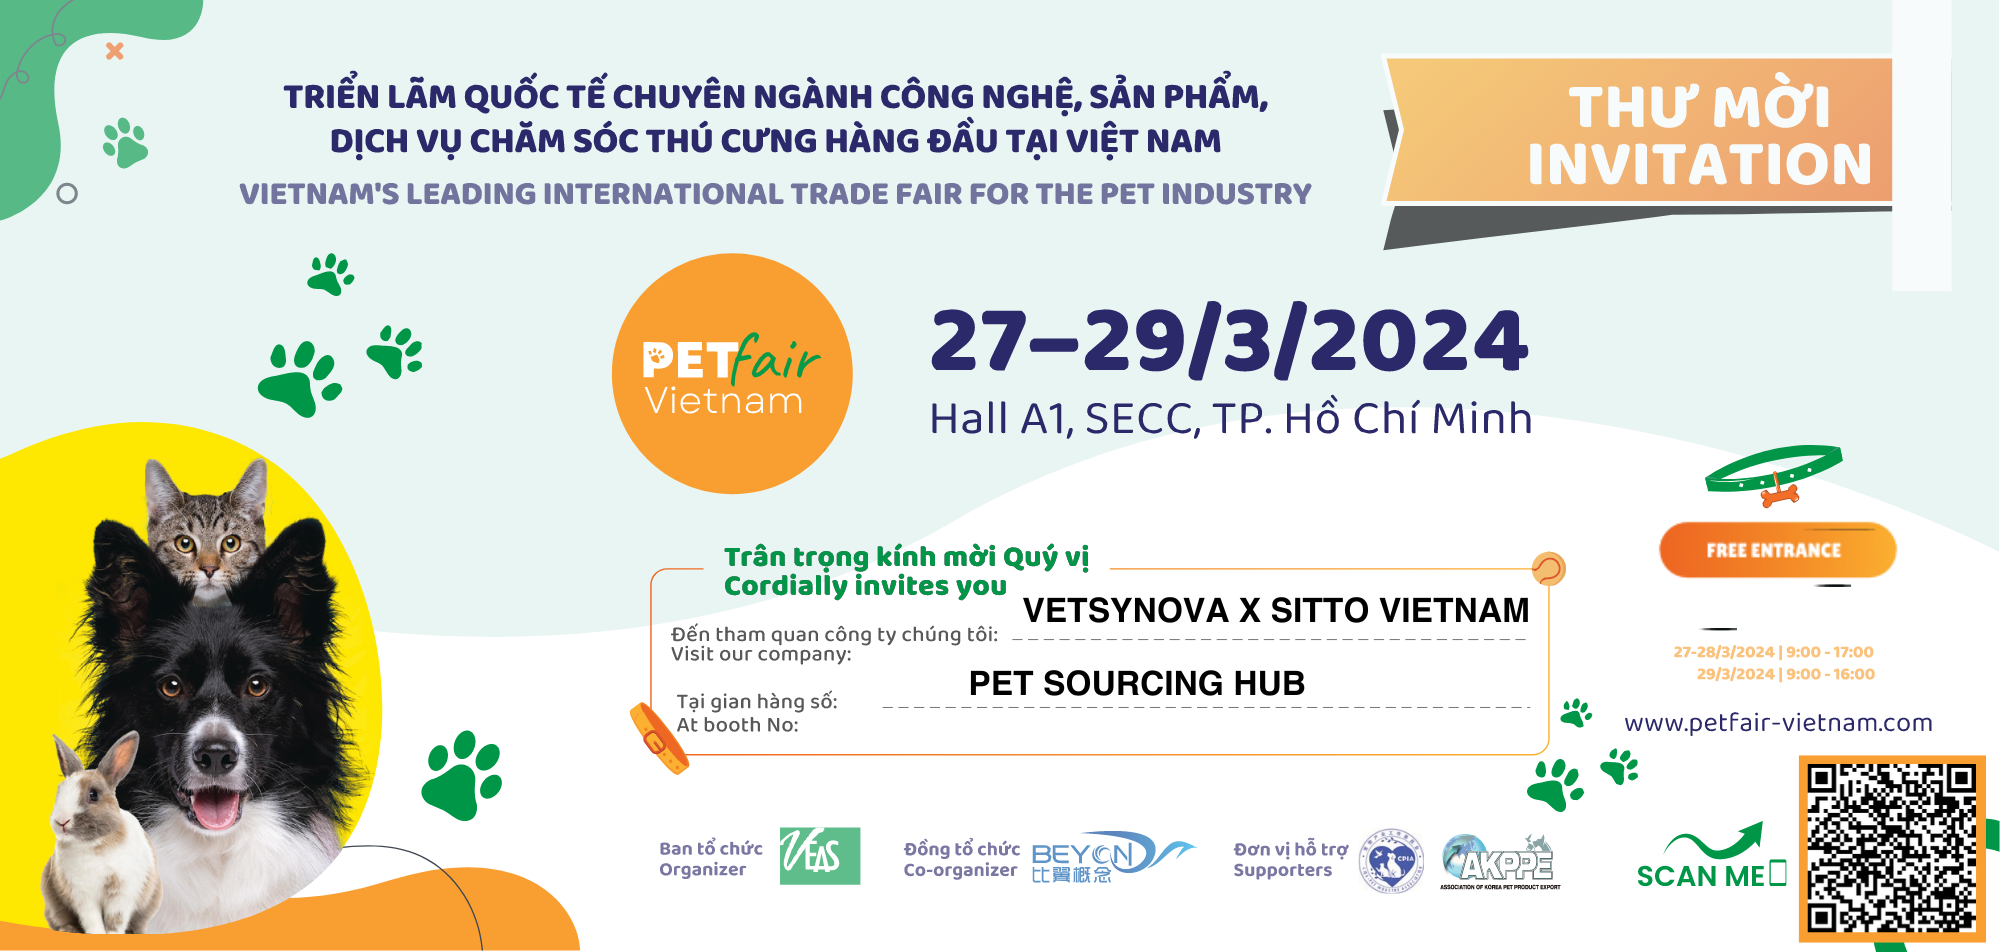 Petfair - Triển lãm quốc tế ngành công nghệ, sản phẩm, dịch vụ chăm sóc thú cưng hàng đầu Việt Nam